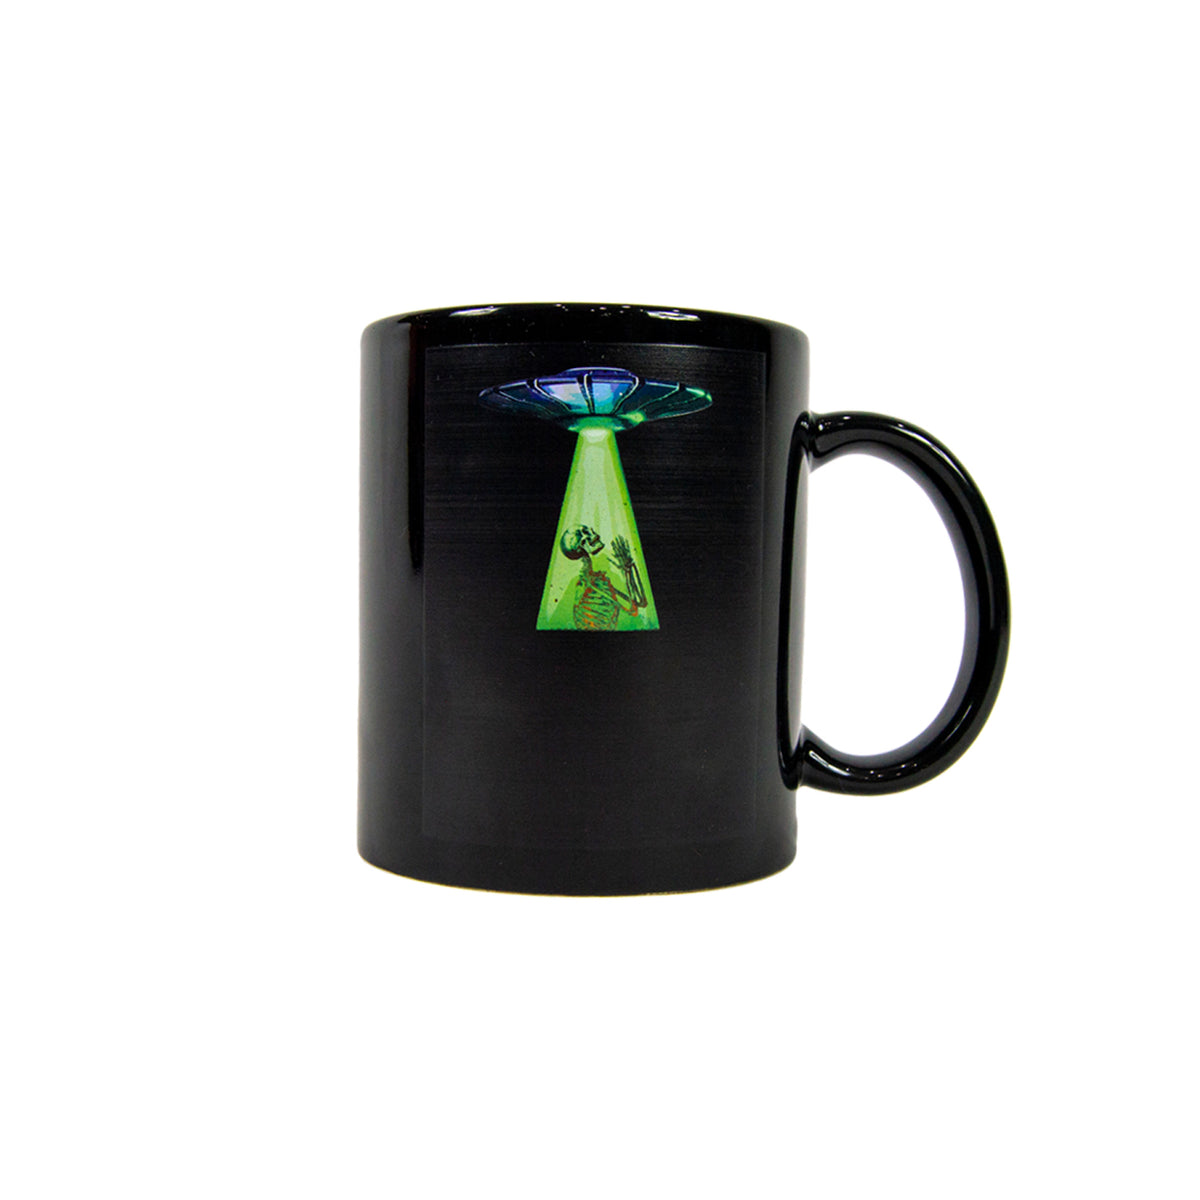 Spaceships mug